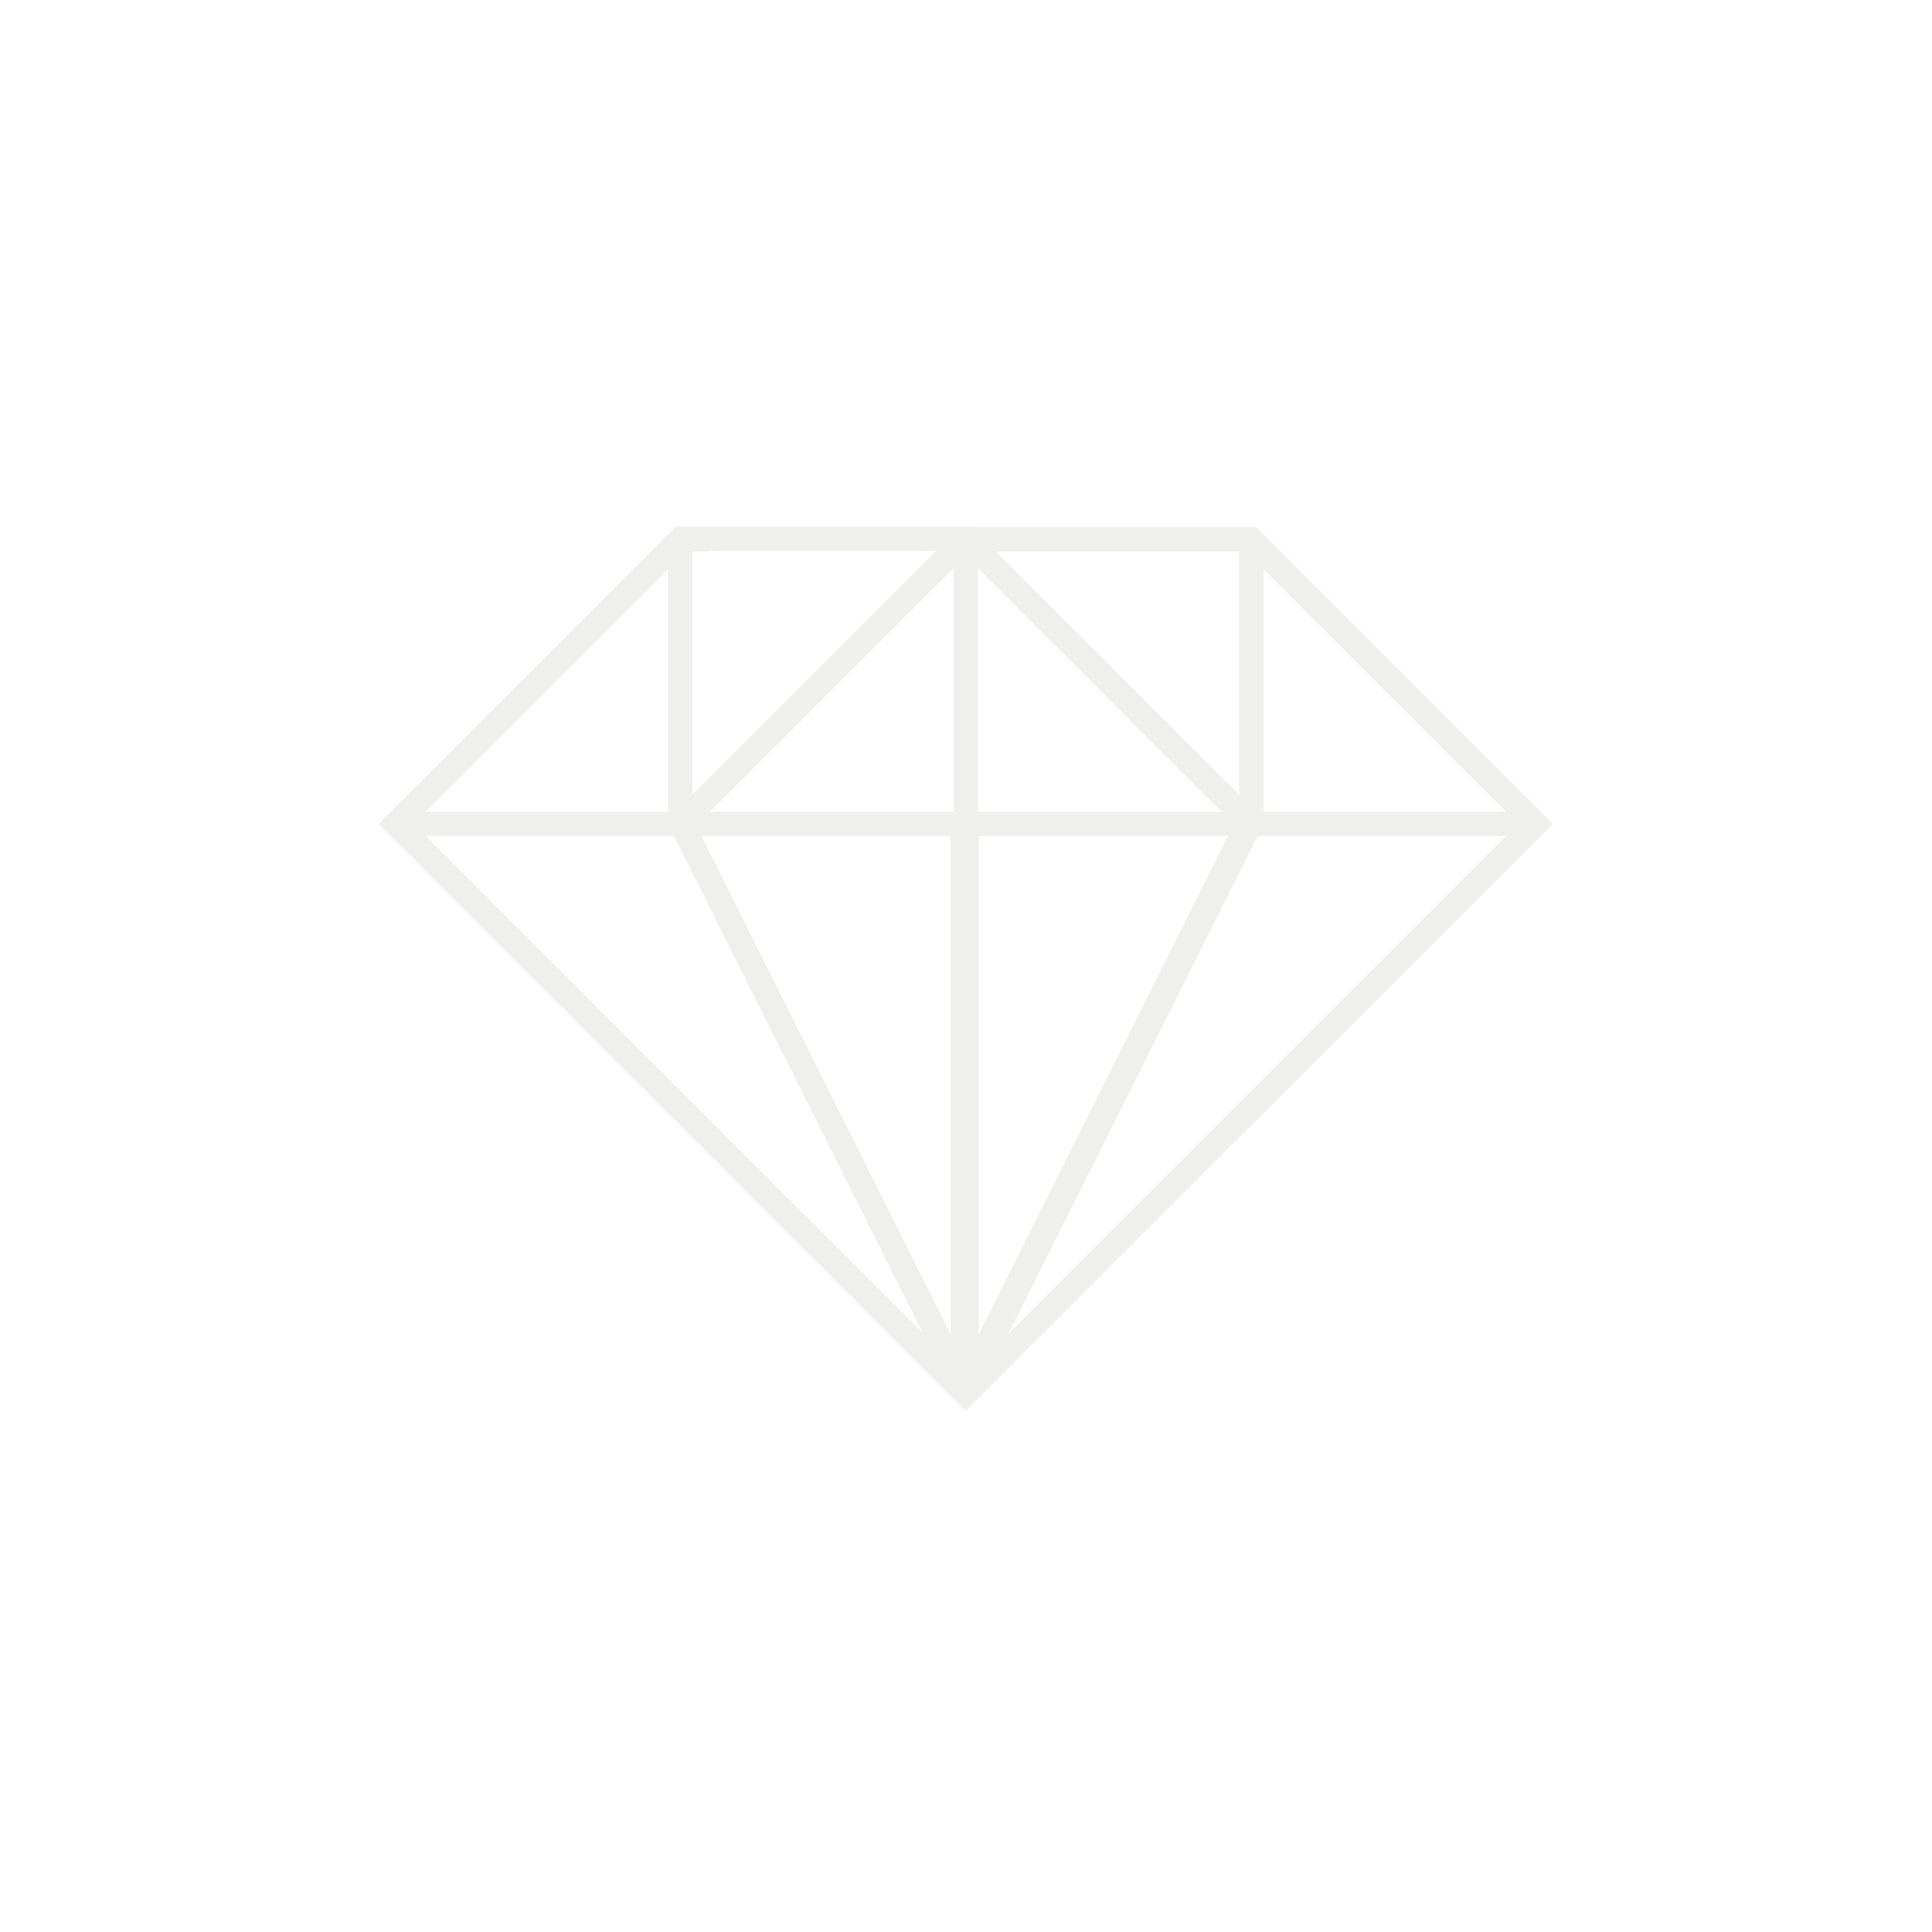 A white diamond line art icon.